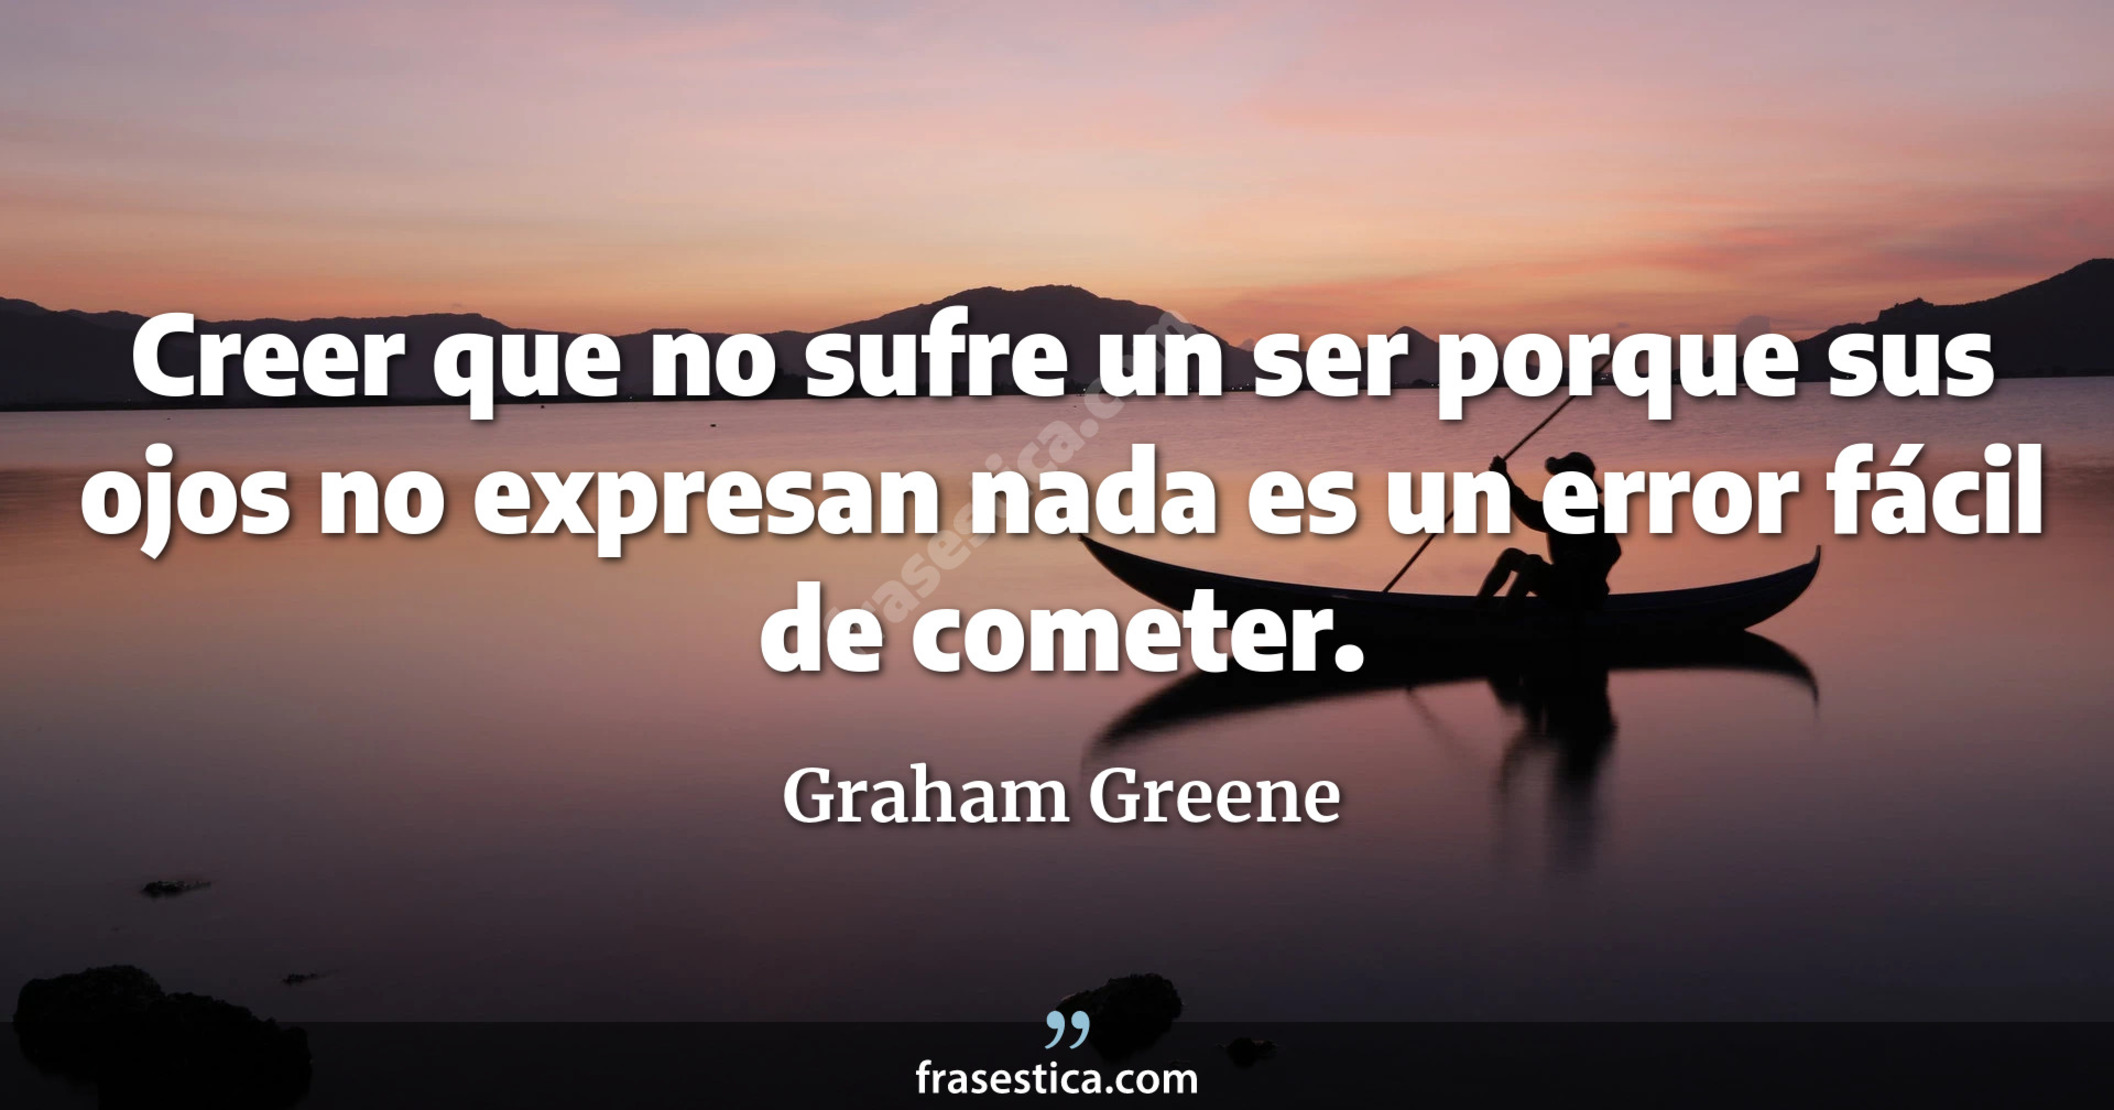 Creer que no sufre un ser porque sus ojos no expresan nada es un error fácil de cometer. - Graham Greene